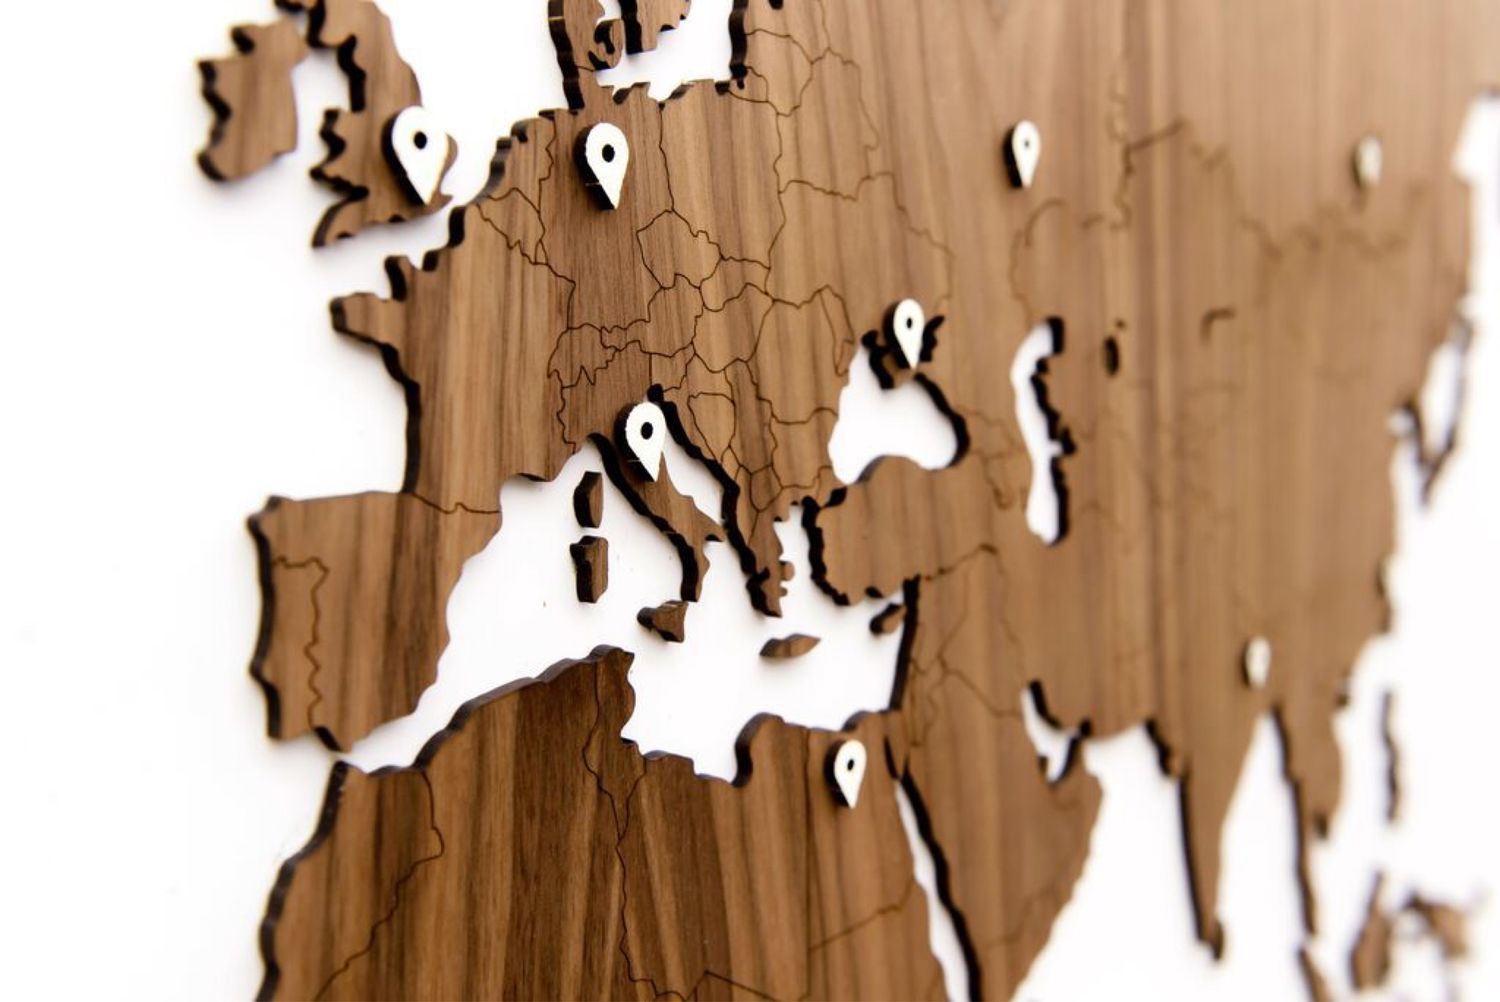 Карта мира деревянная Exclusive Walnut 180x108 см, Карты мира, Москва,  Фото №1